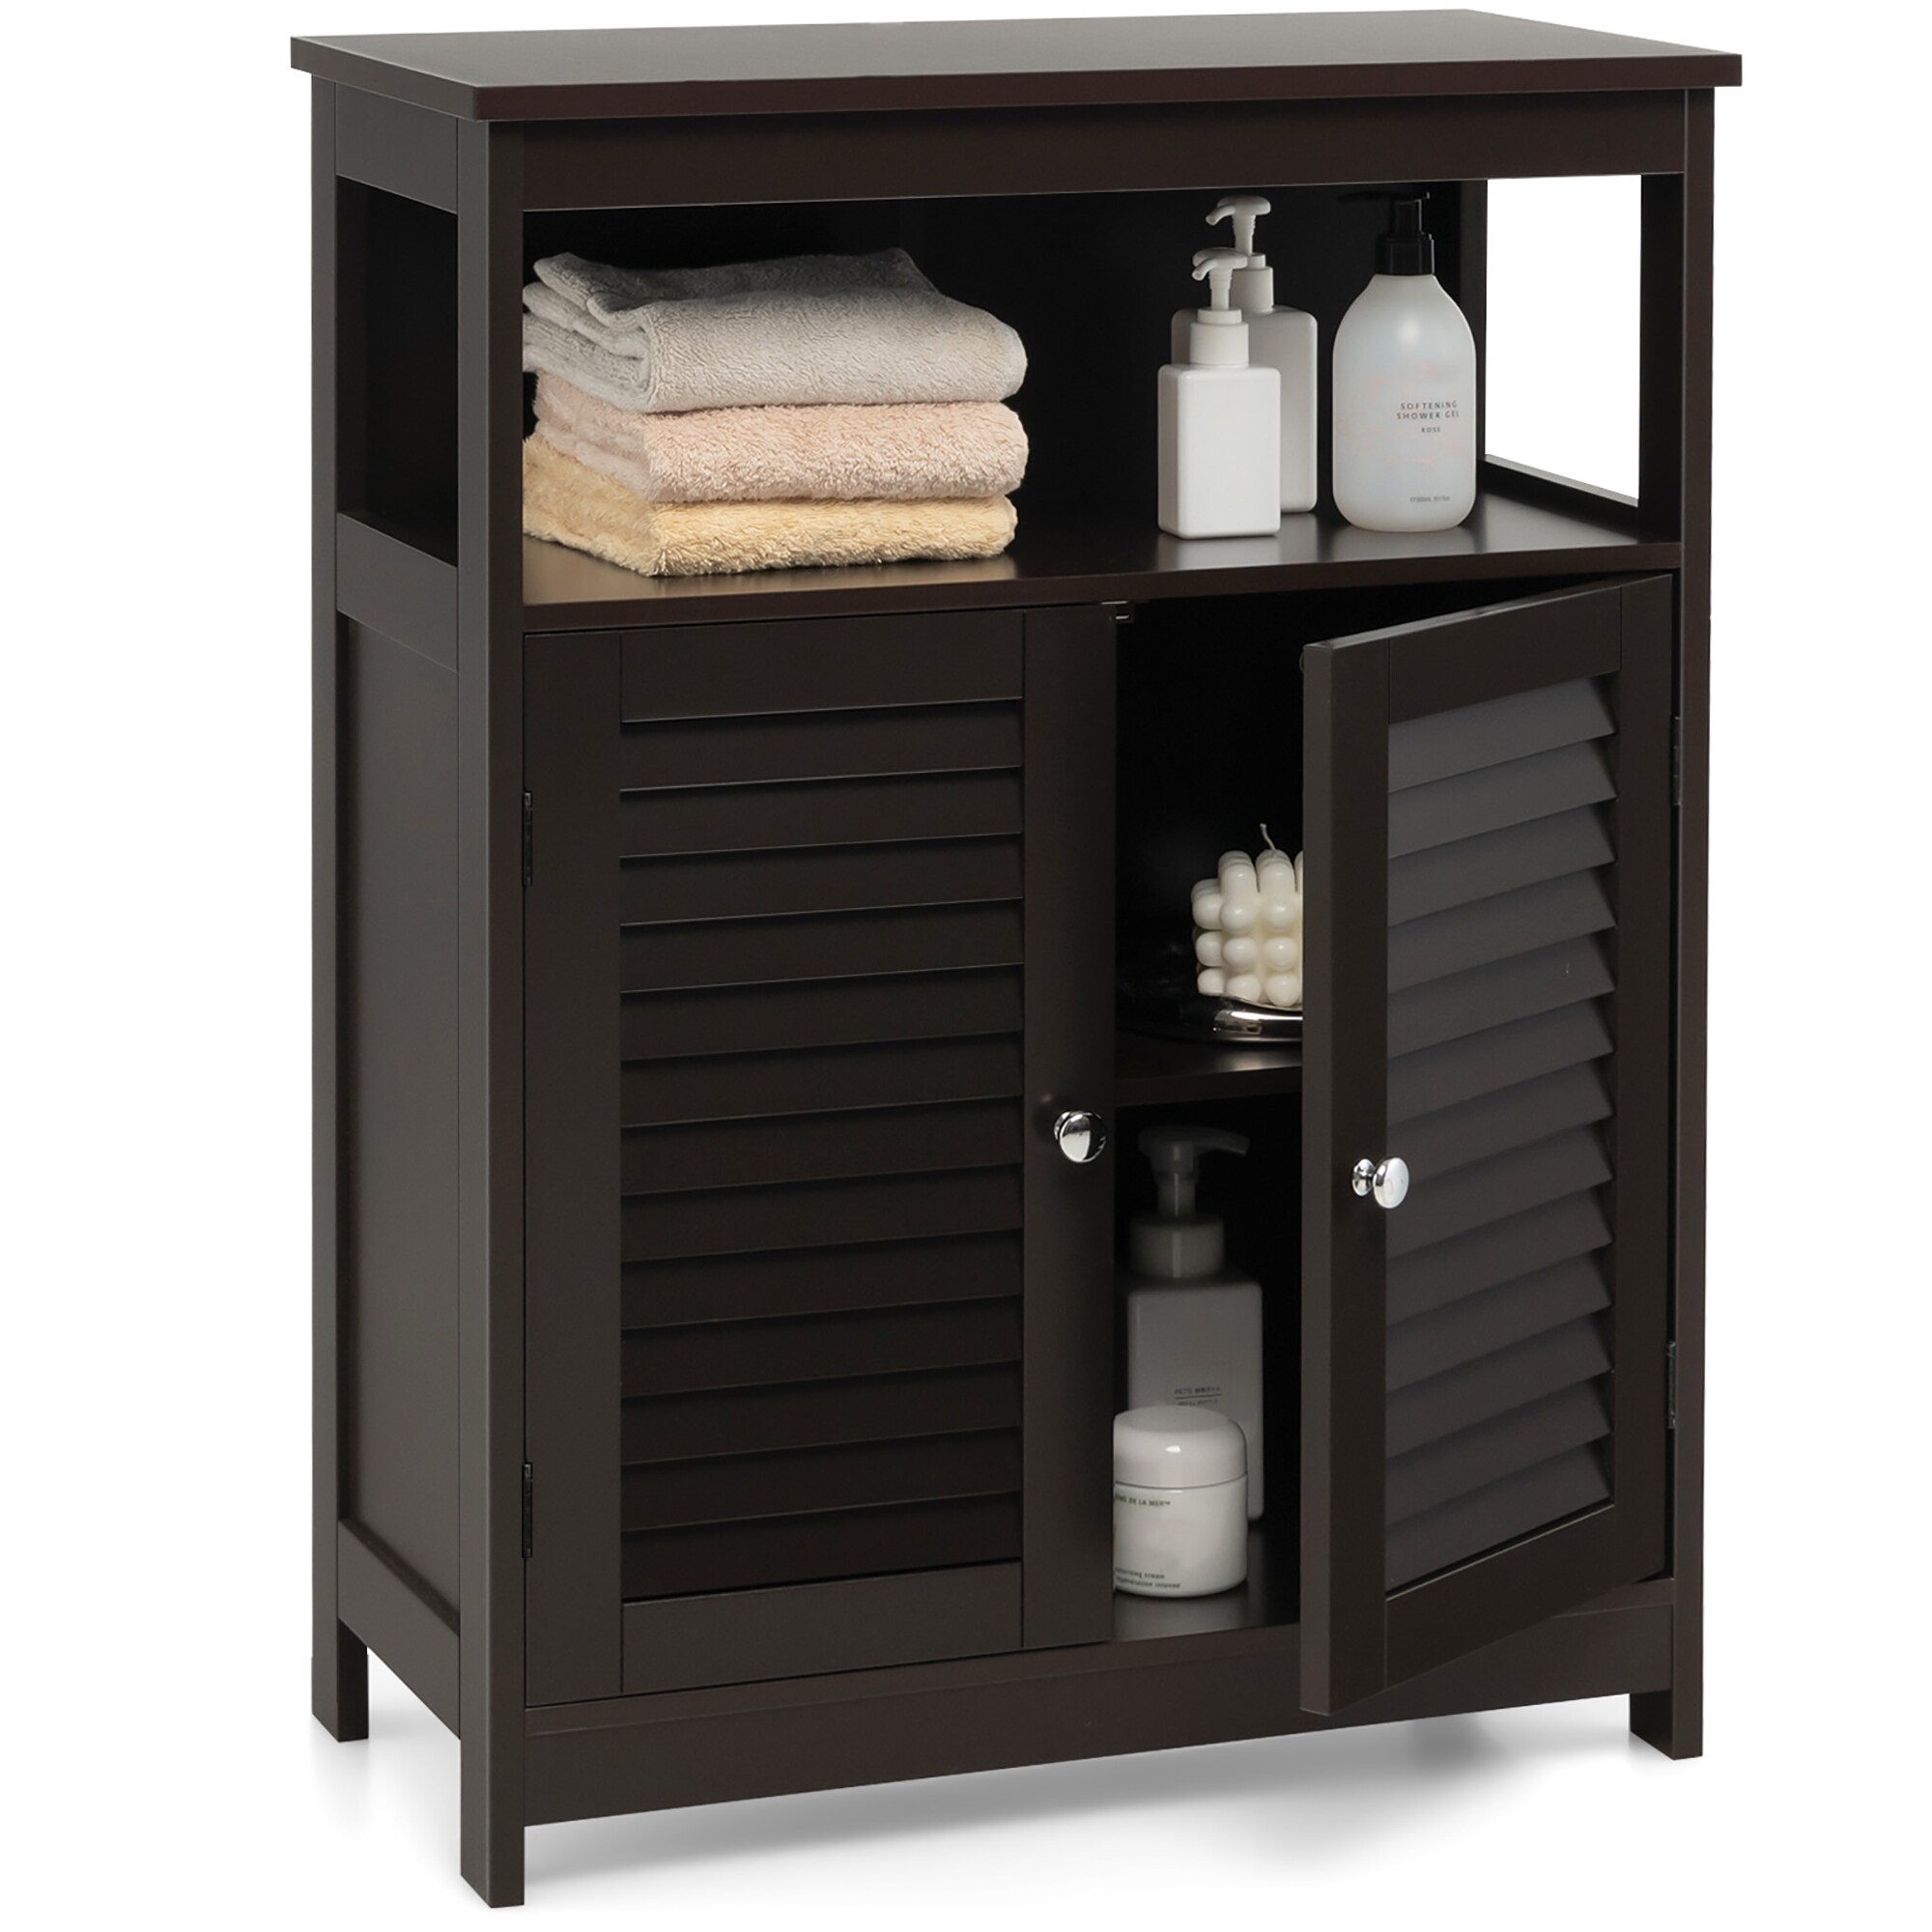 Costway Bathroom Storage Cabinet Wood Floor Cabinet w/Double Shutter